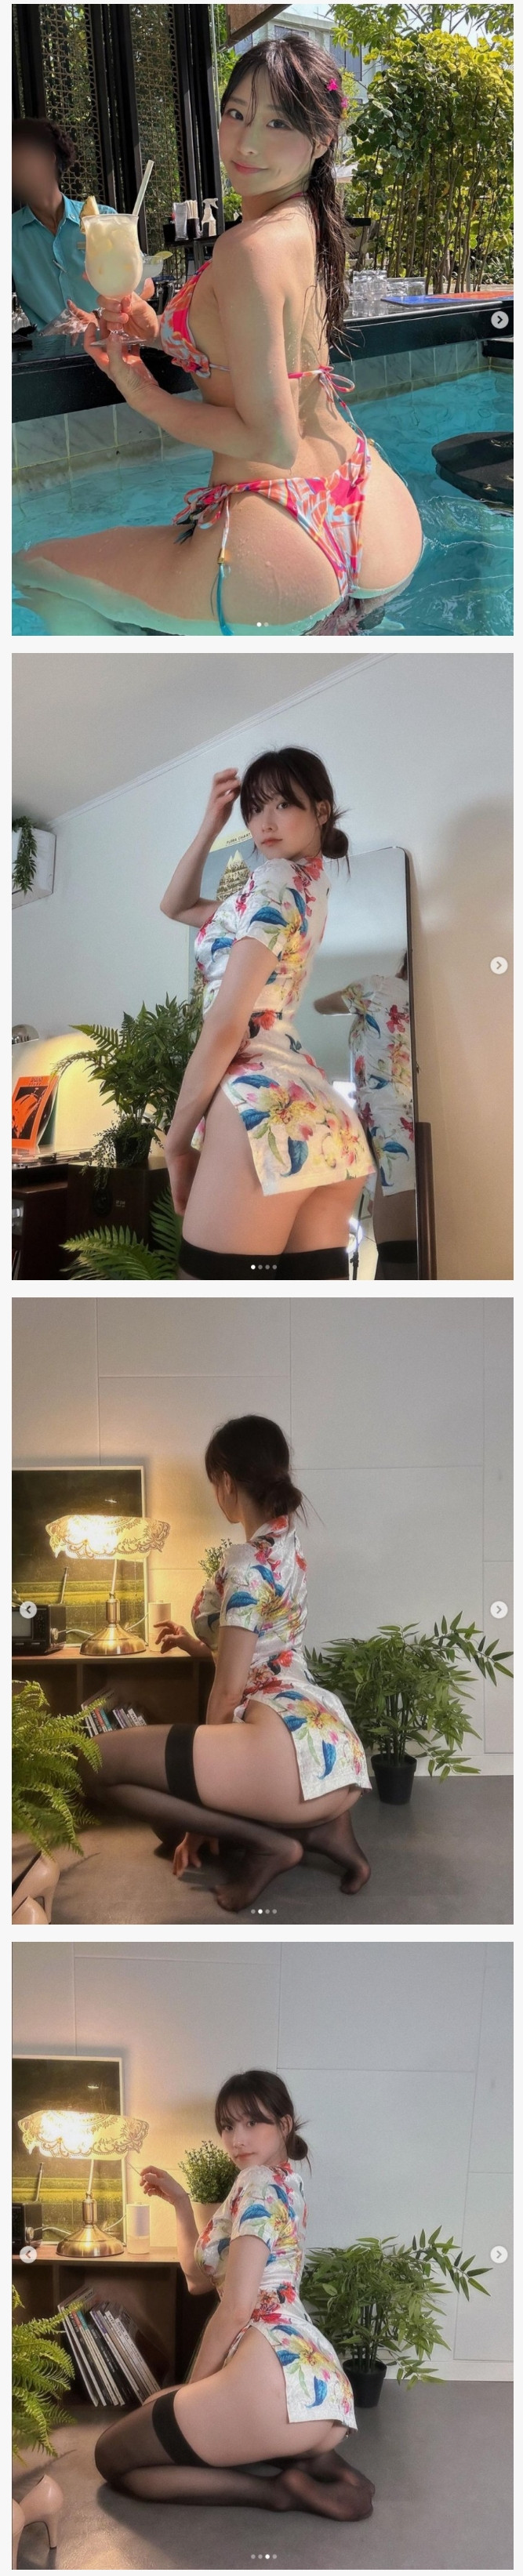 기립근과 엉덩이 노출에 항상 진심인 명아츄 비키니+속옷 착샷